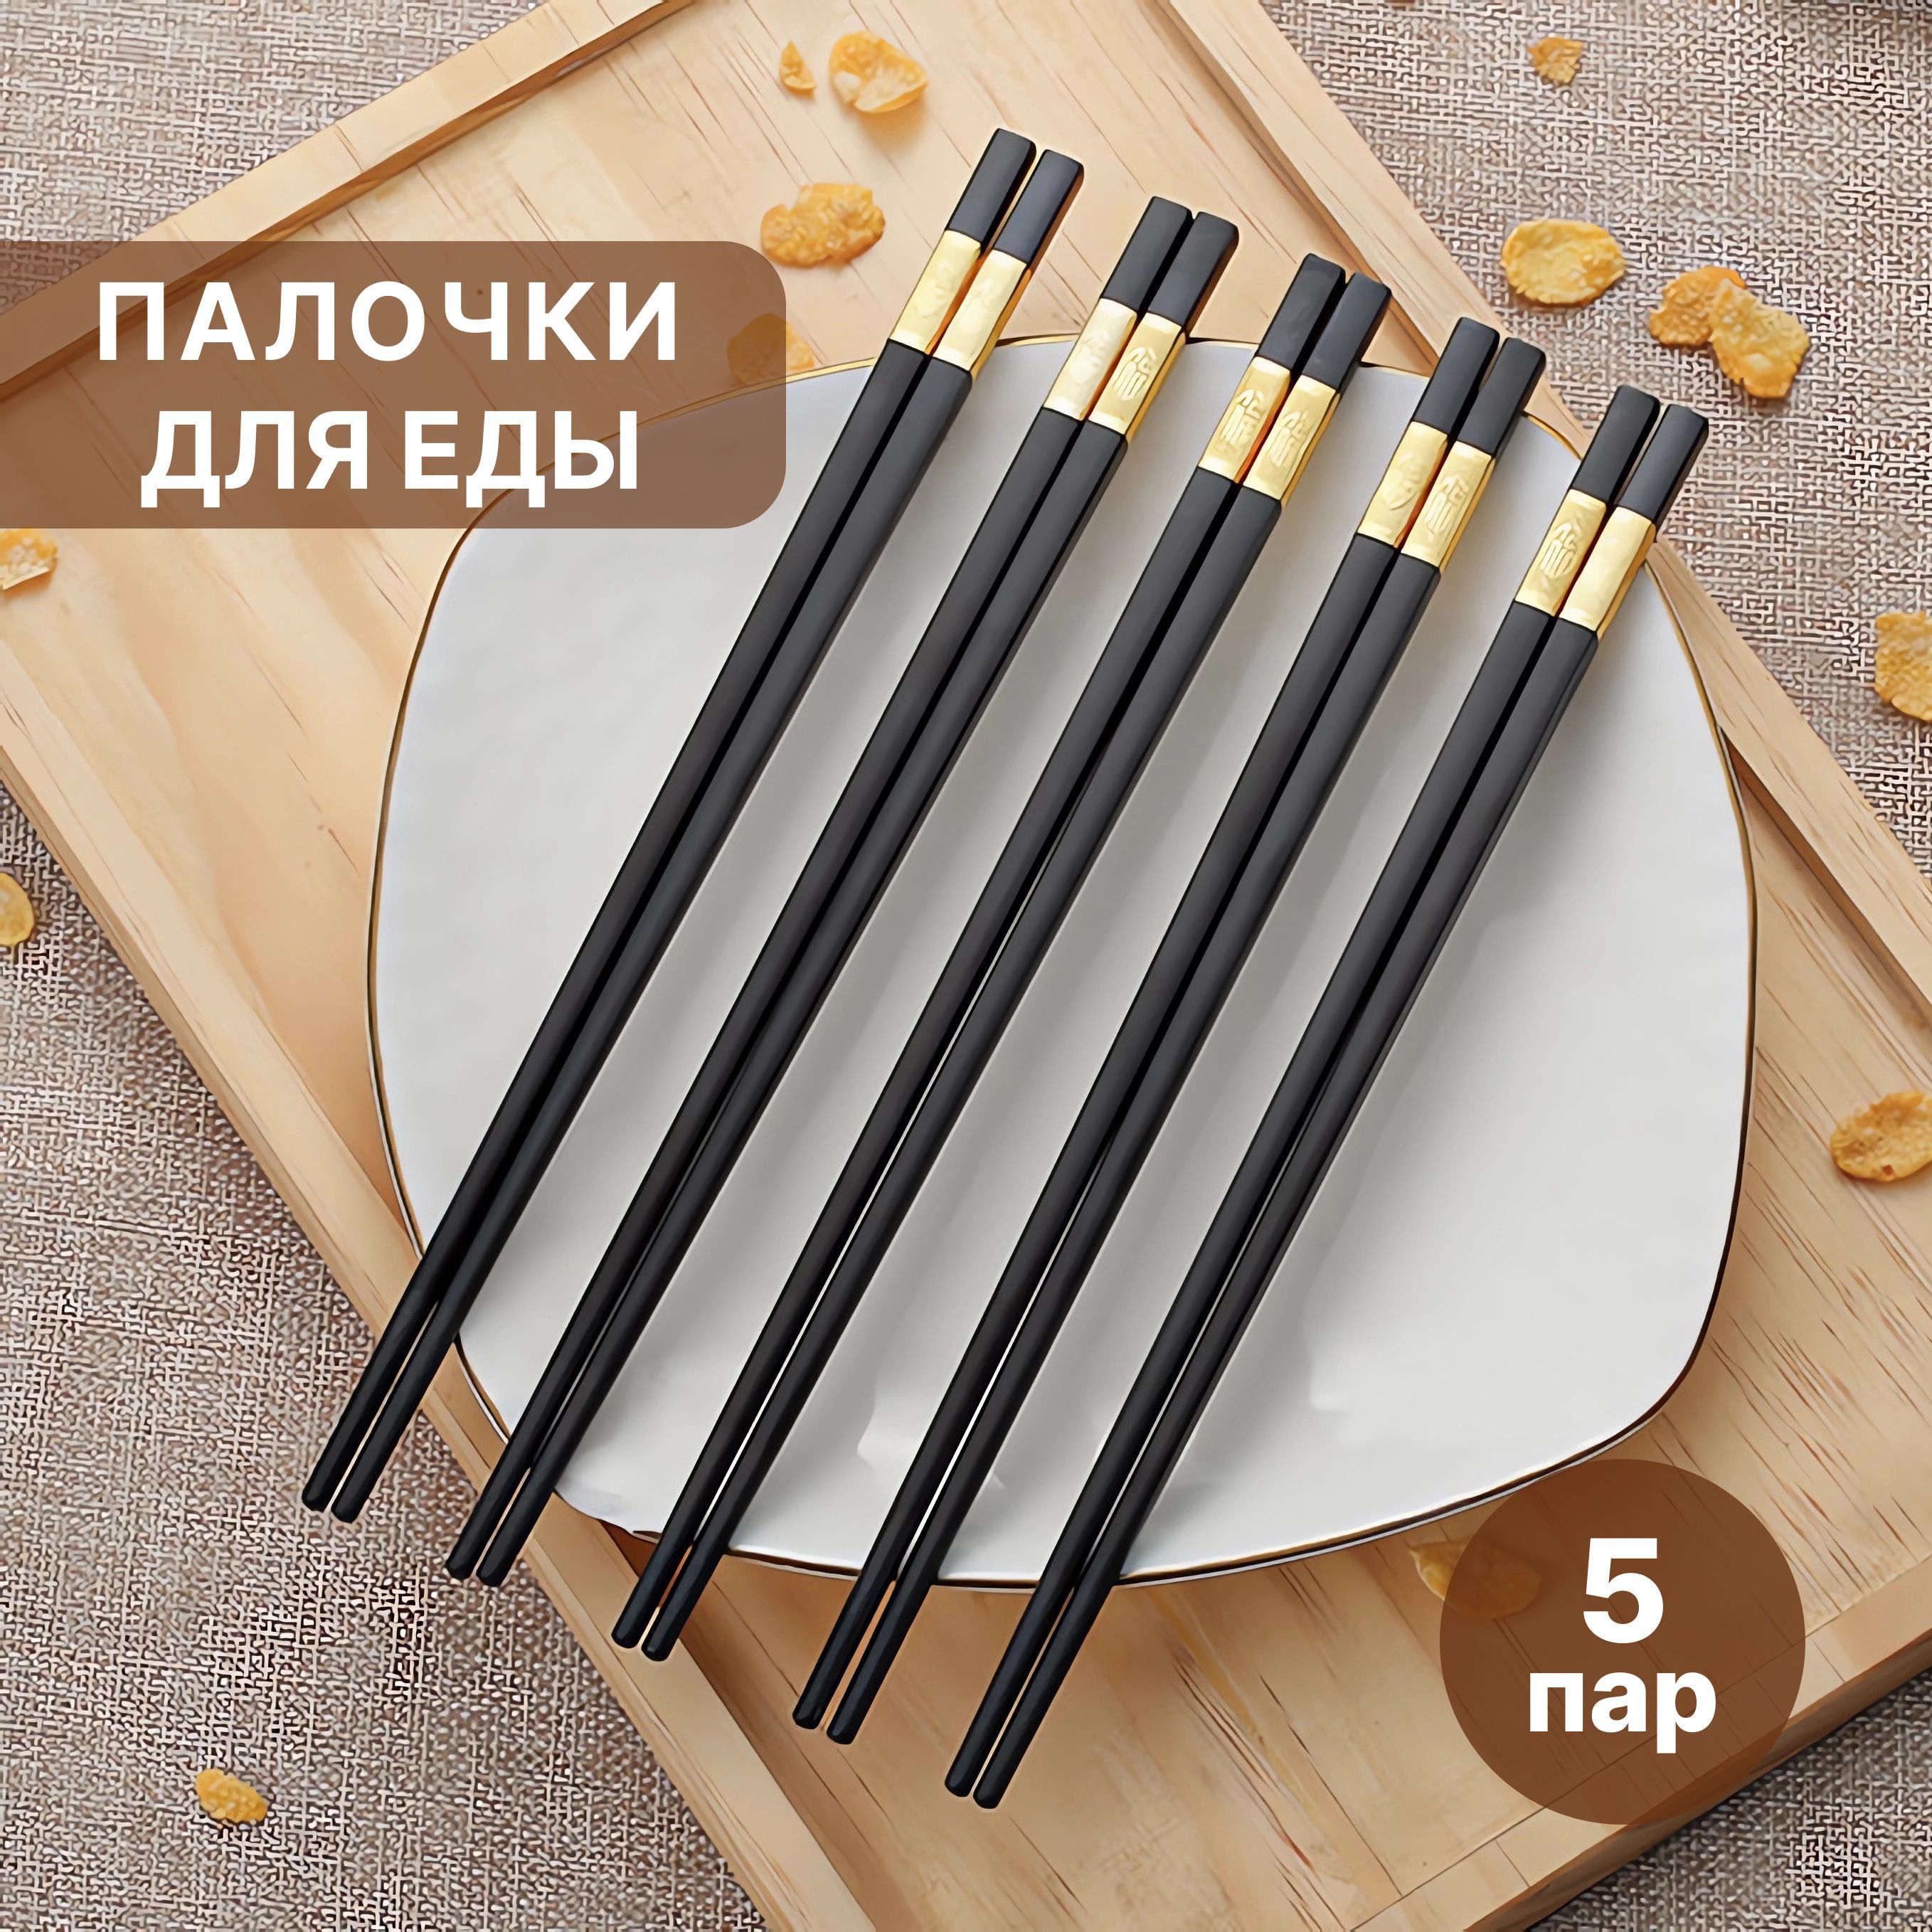 Как правильно держать палочки для суши и роллов